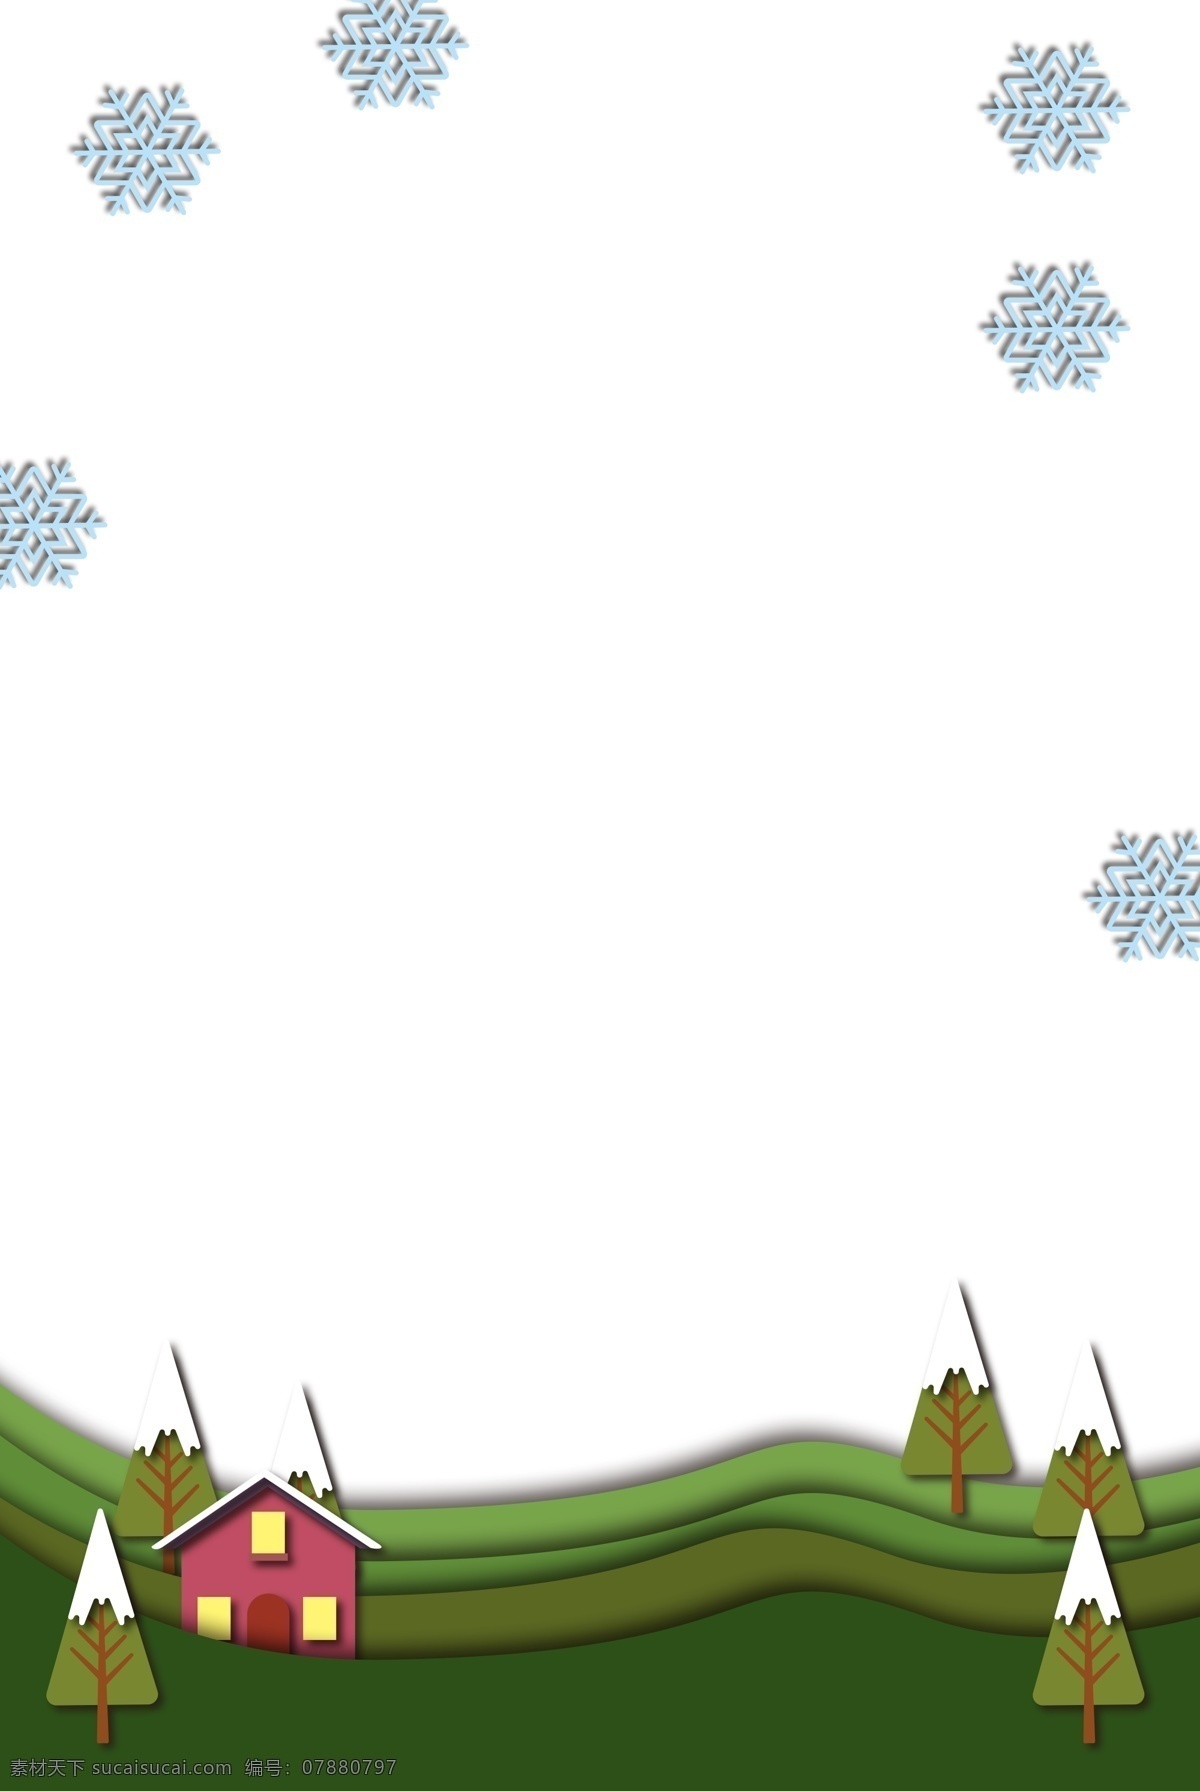 圣诞节 雪花 边框 插画 手绘 白色的雪花 漂亮的边框 可爱的边框 红色的房屋 绿色的圣诞树